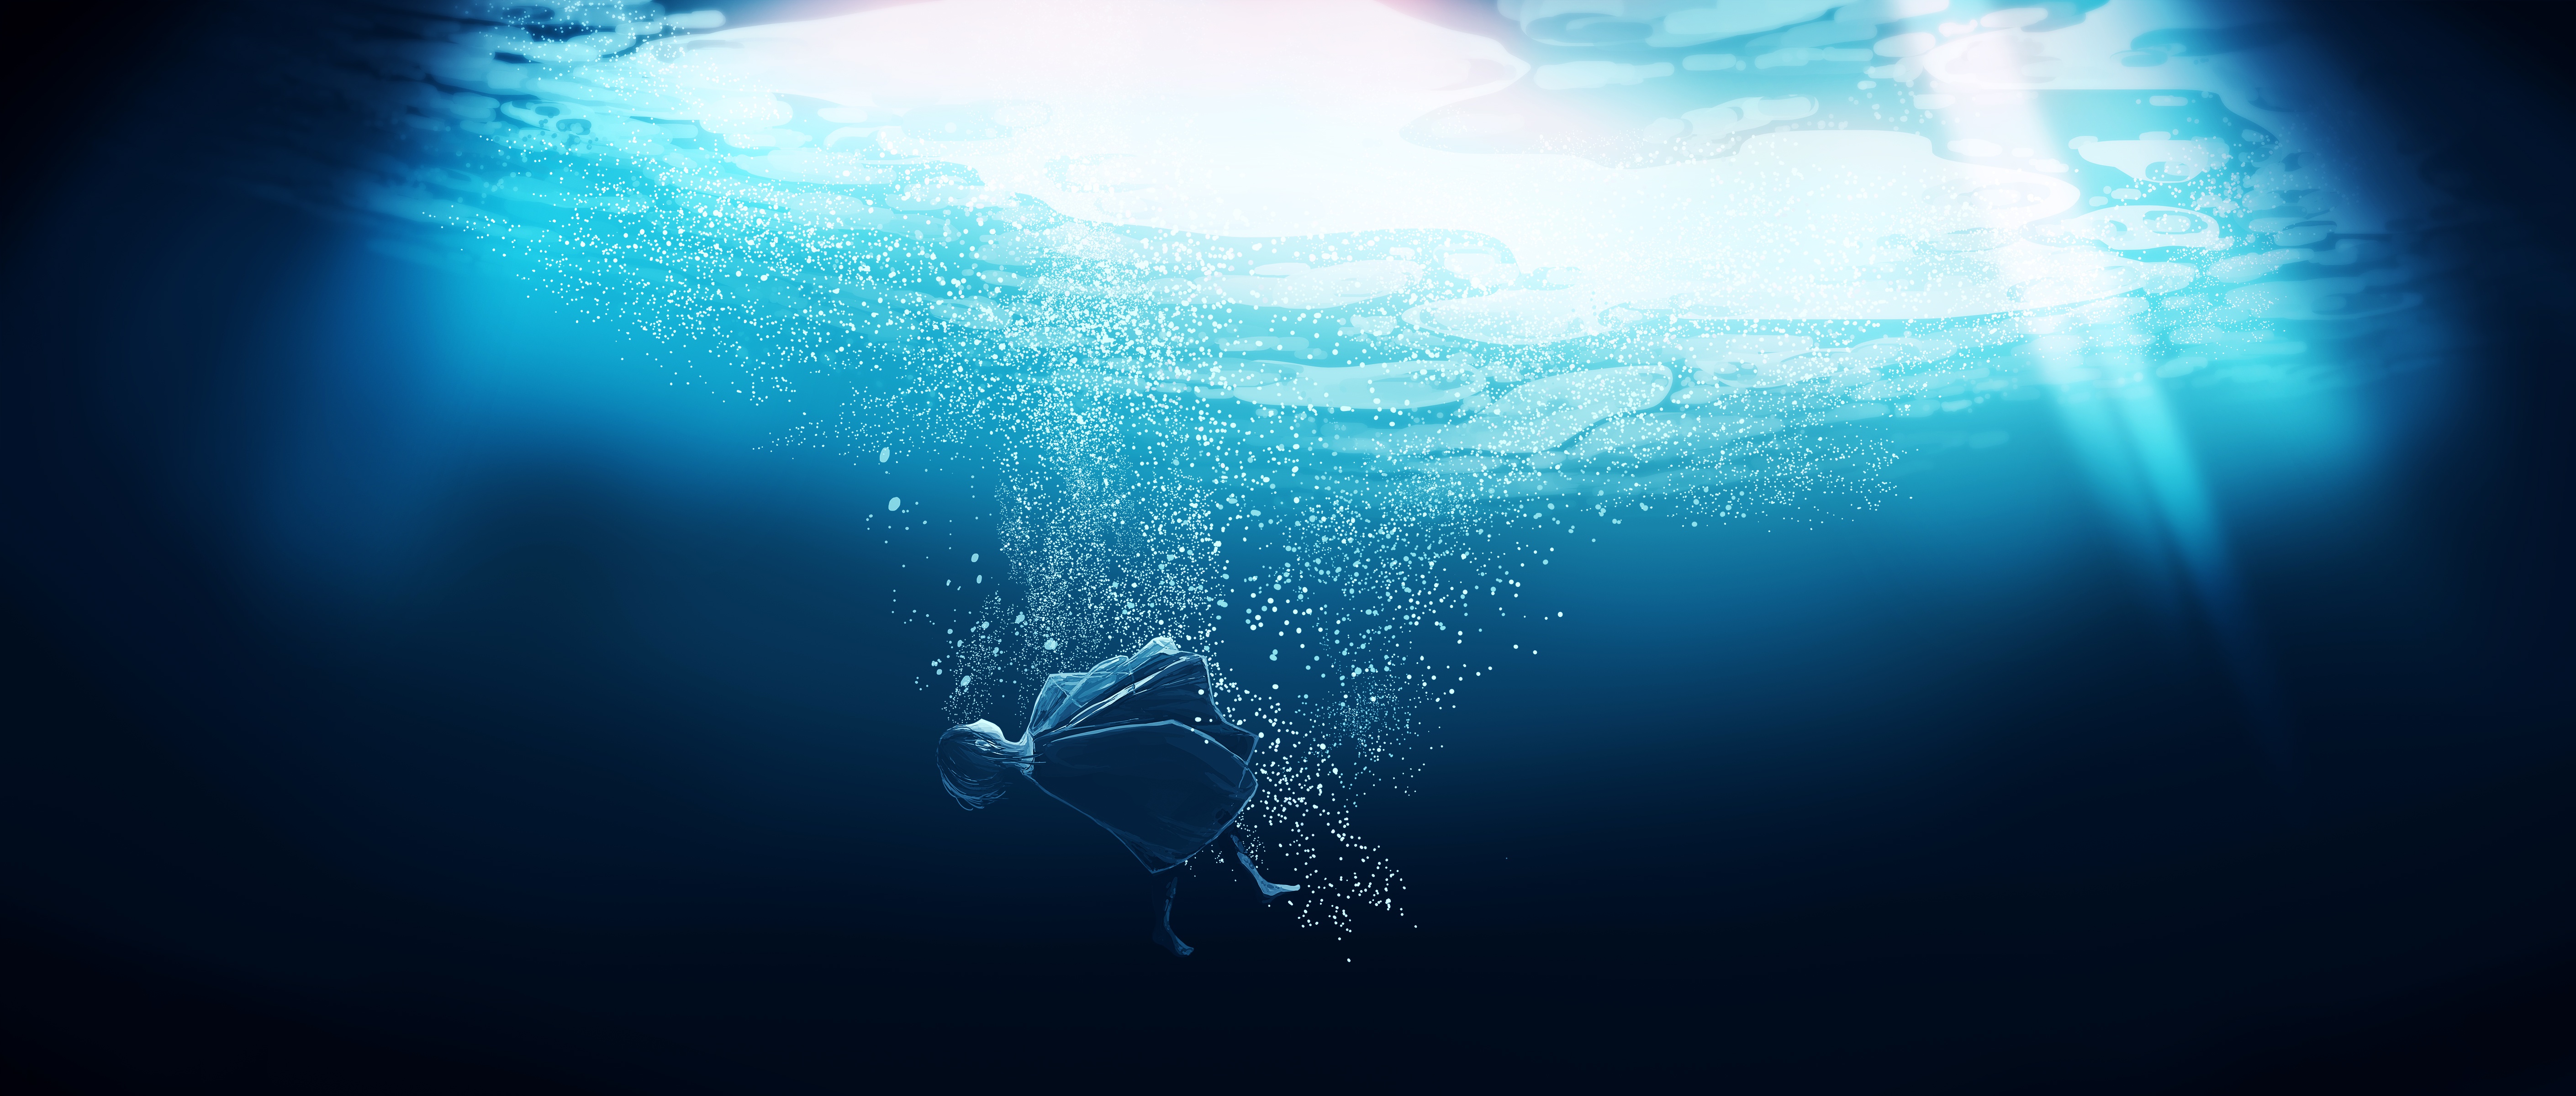 Hình nền dưới nước 4k: Nếu bạn muốn trải nghiệm cảm giác đắm mình trong biển khơi, hình nền dưới đây sẽ thật sự là một lựa chọn tuyệt vời. Với độ phân giải 4k, hình nền này sẽ mang đến cho bạn cảm giác như đang bơi trong một bể bơi đầy màu sắc. Hãy đắm chìm vào vẻ đẹp của những người bạn đáng yêu dưới nước, mỗi khi ánh mắt lướt qua màn hình của bạn.